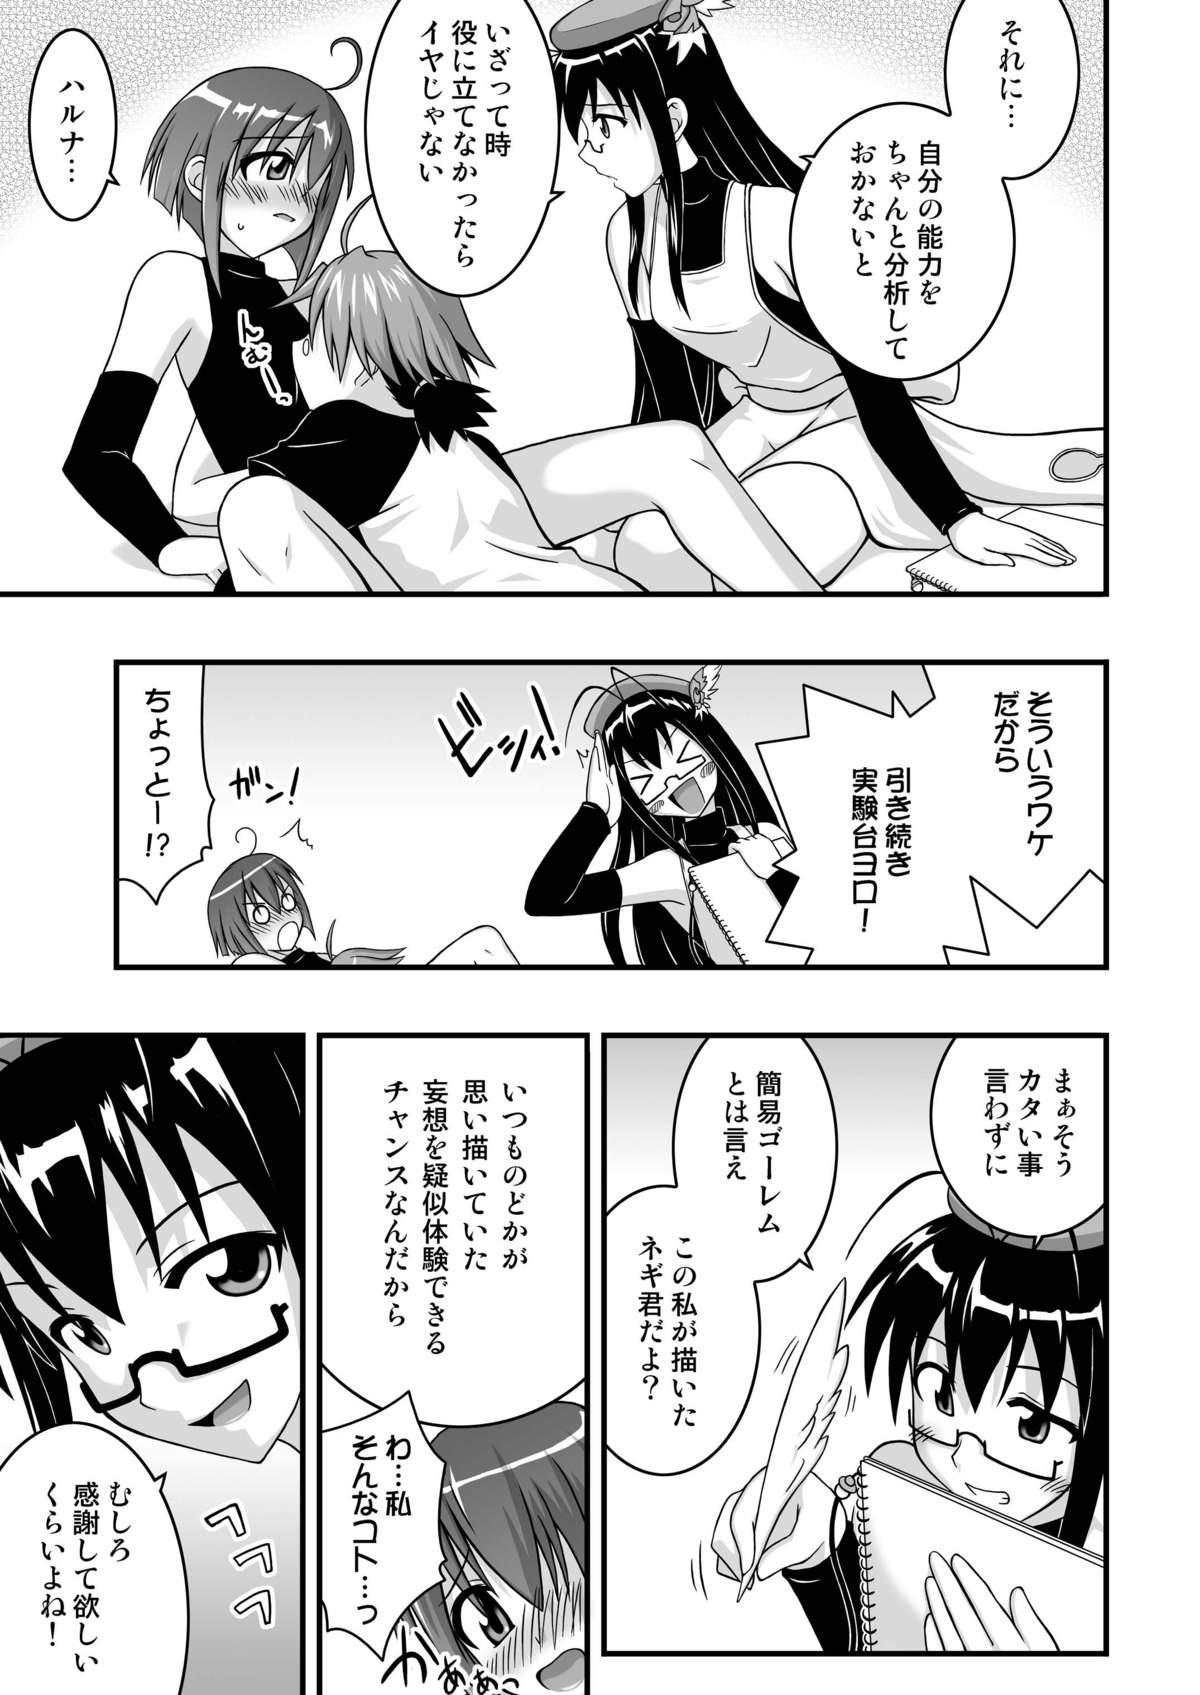 Suck Cock Ura Mahou Sensei Jam-ma! 10 - Mahou sensei negima Cam Girl - Page 7